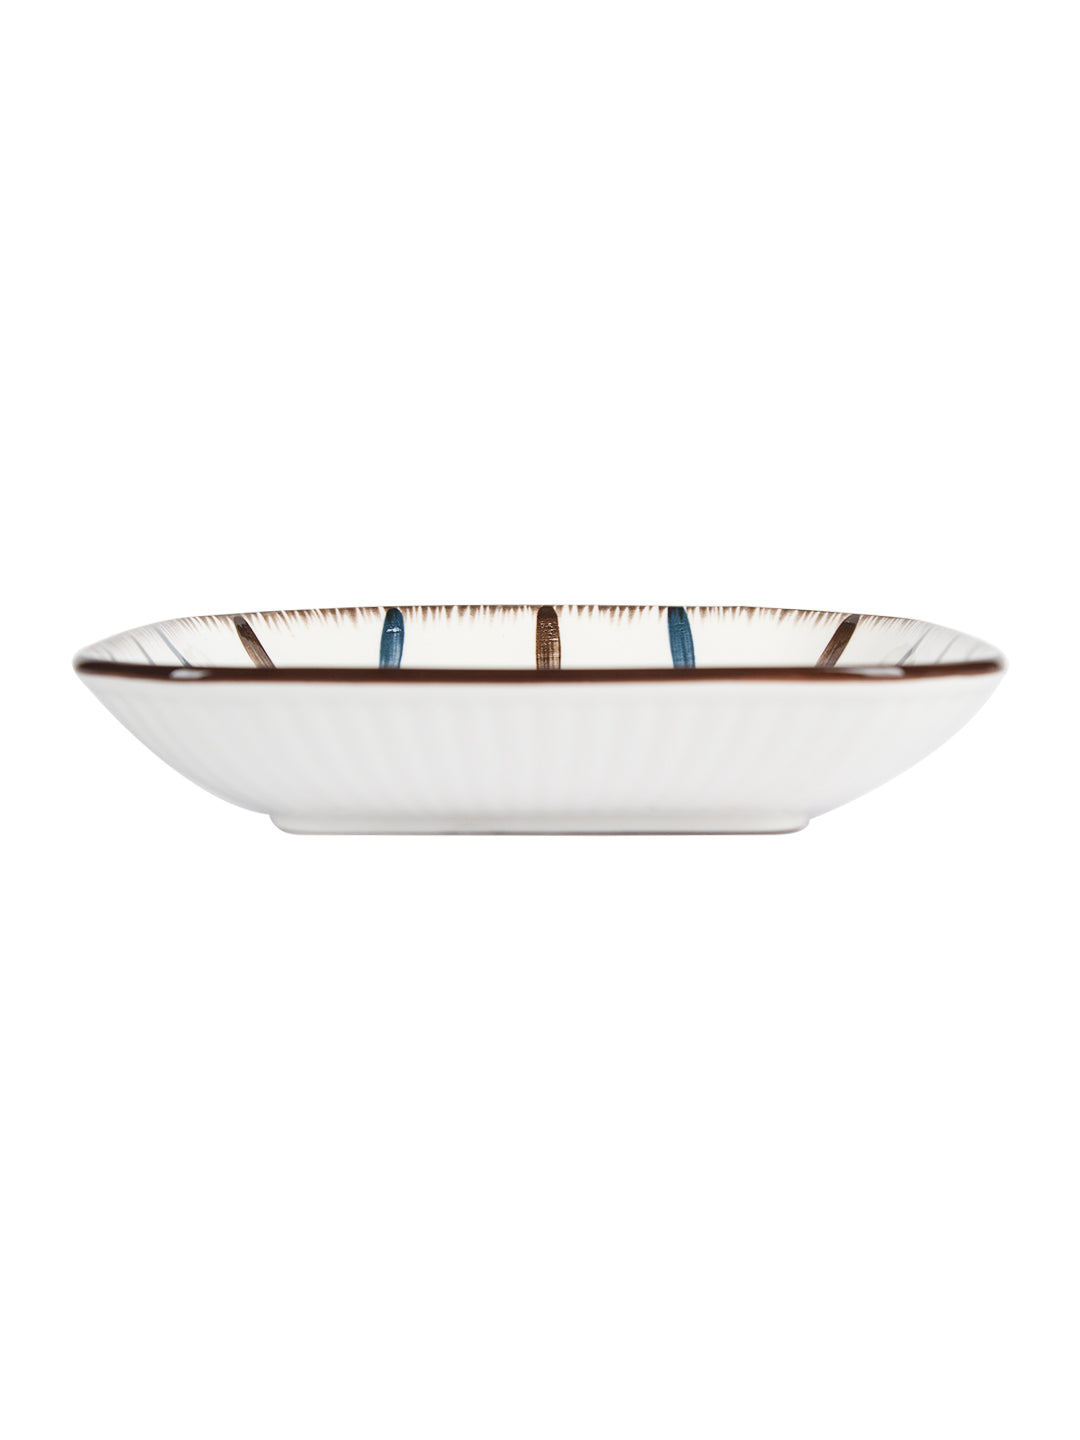 VON CASA Round Serveware Ceramic Dinner Plates - Off White